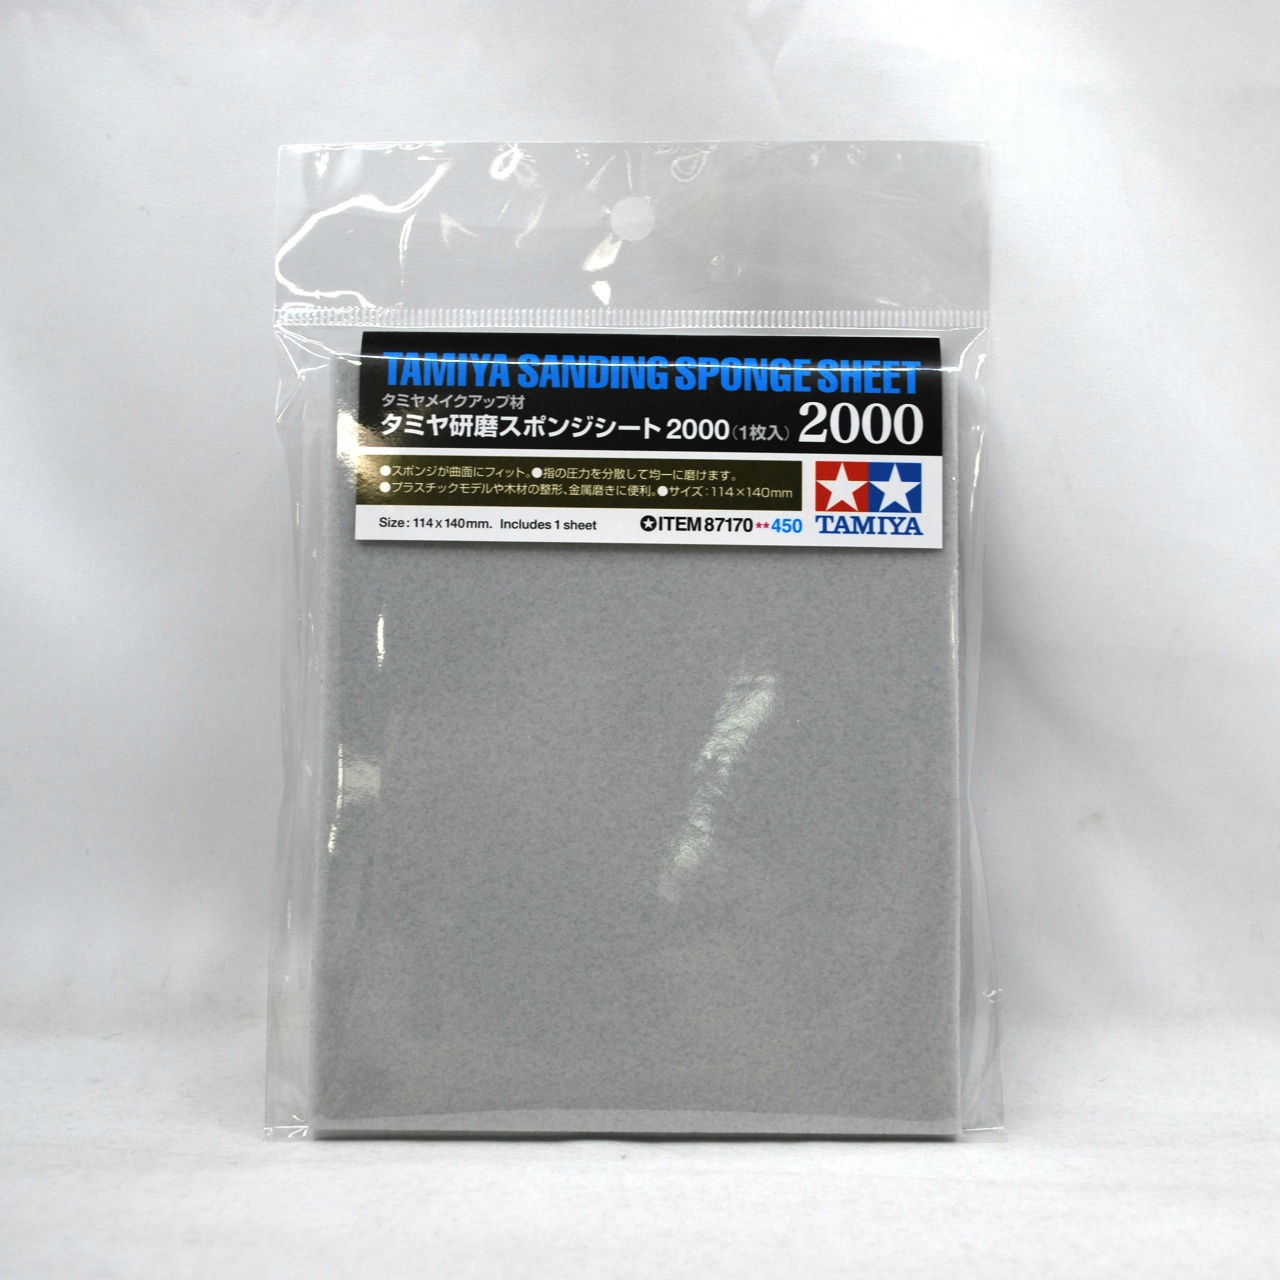 タミヤ メイクアップ材シリーズ 87170 タミヤ研磨スポンジシート 2000